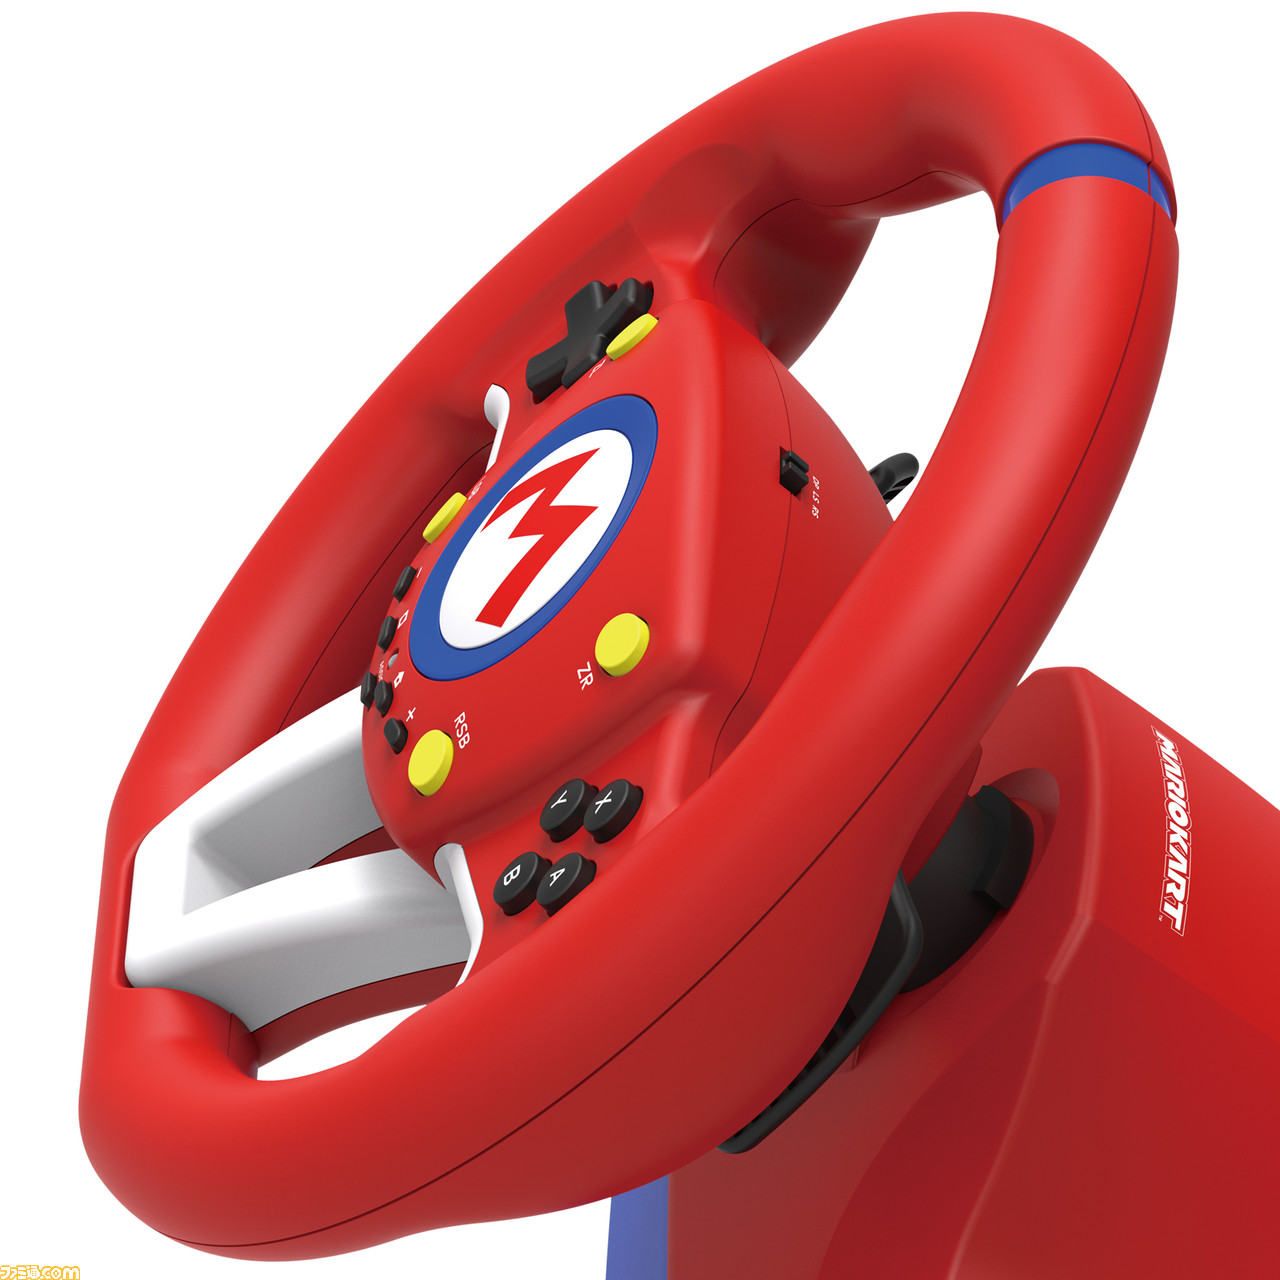 マリオカート』仕様のステアリング型コントローラーが2種類ホリより11月に発売決定。マリオを思わせる赤いカラーが鮮やか |  ゲーム・エンタメ最新情報のファミ通.com